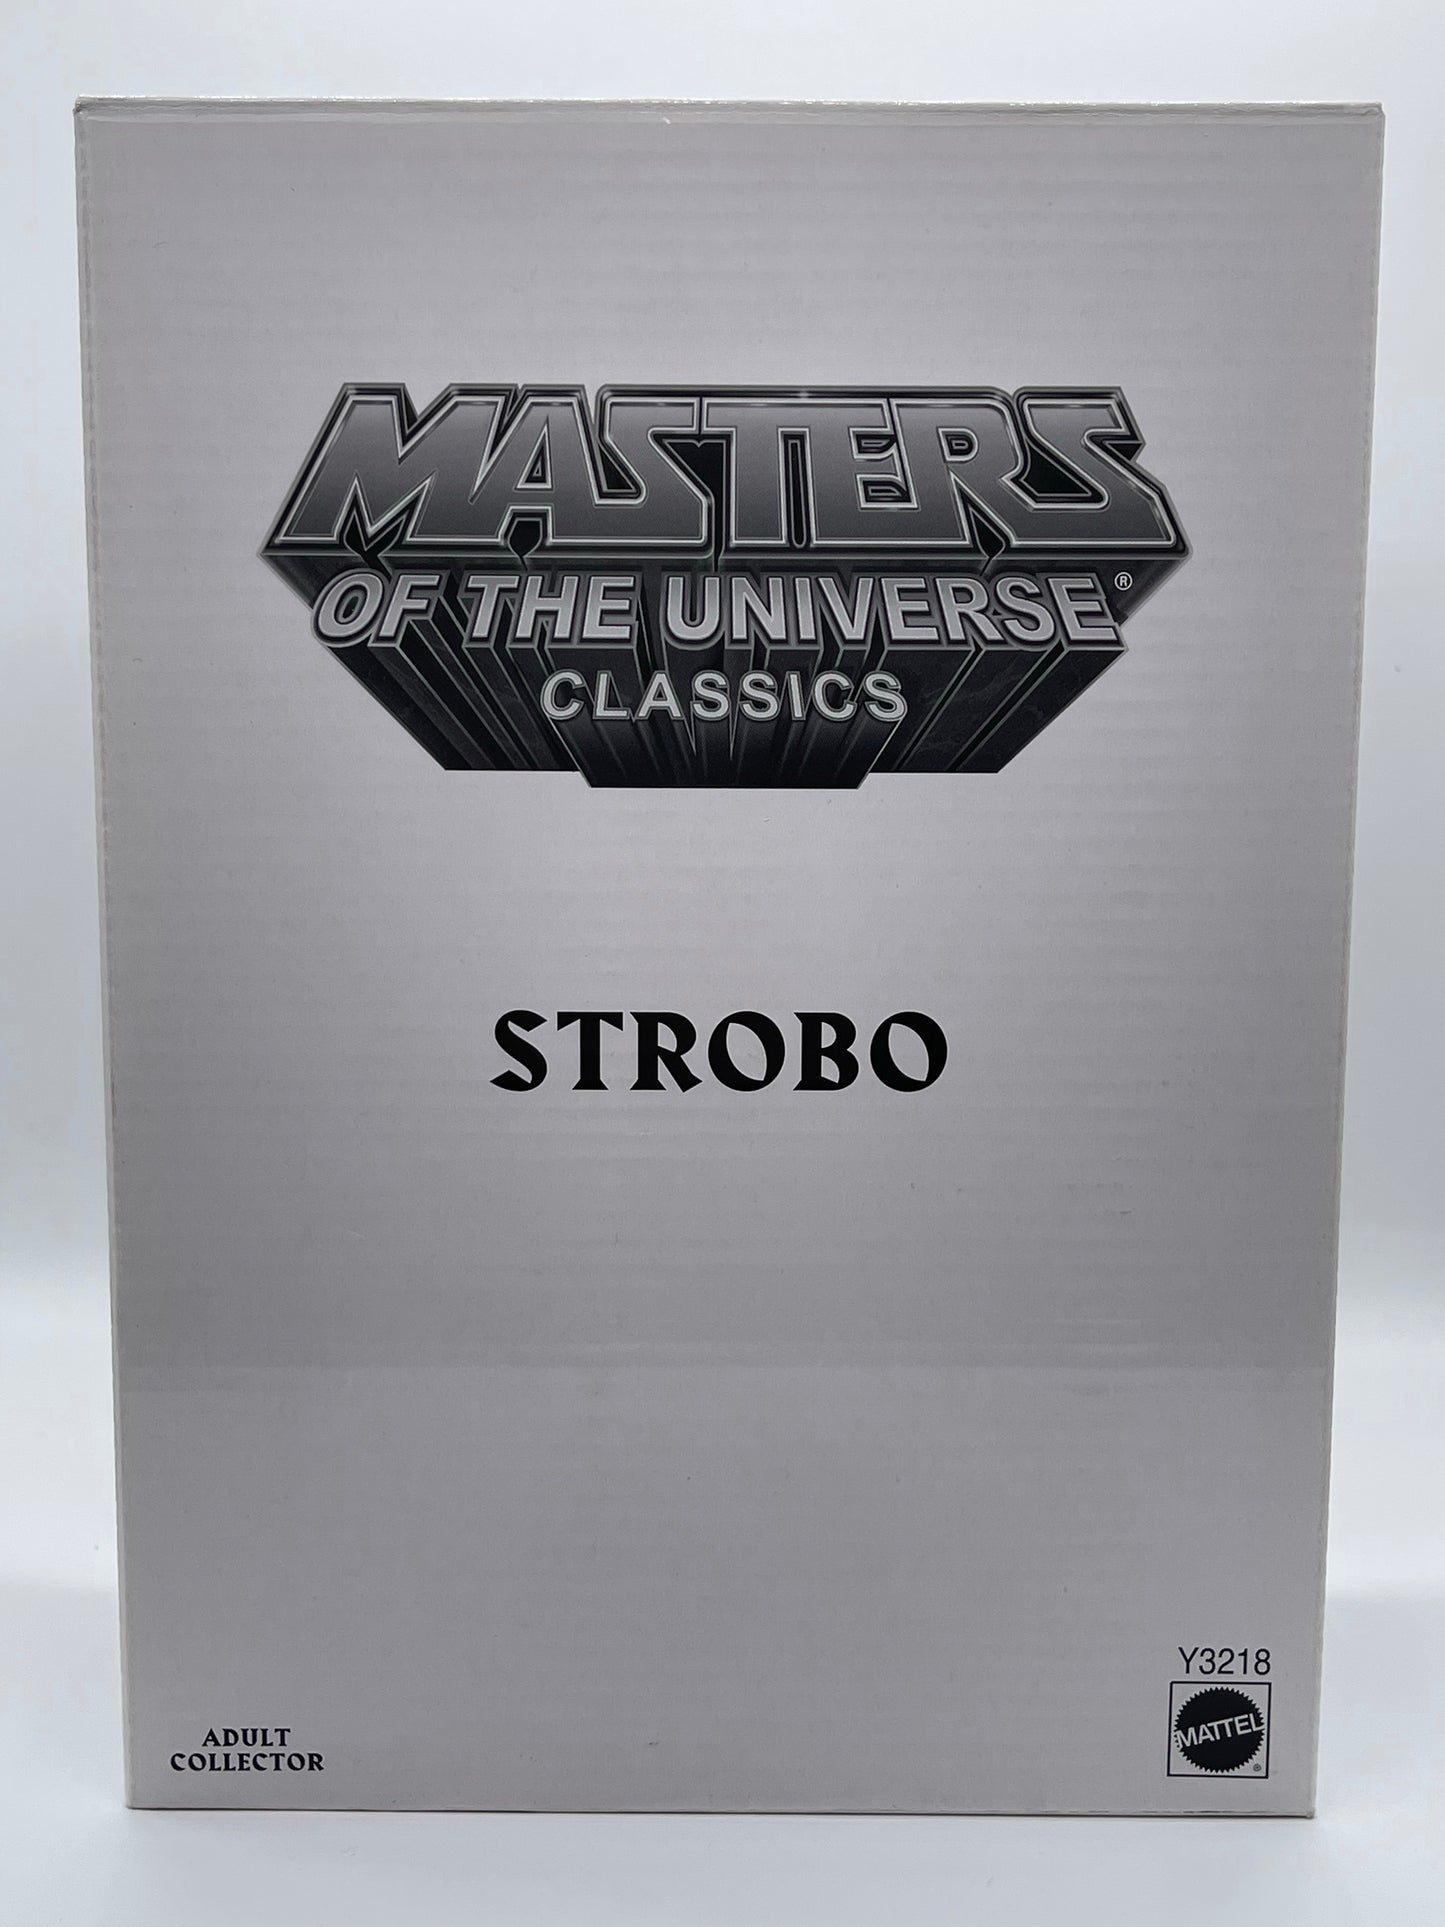 Masters of the Universe Classics Strobo